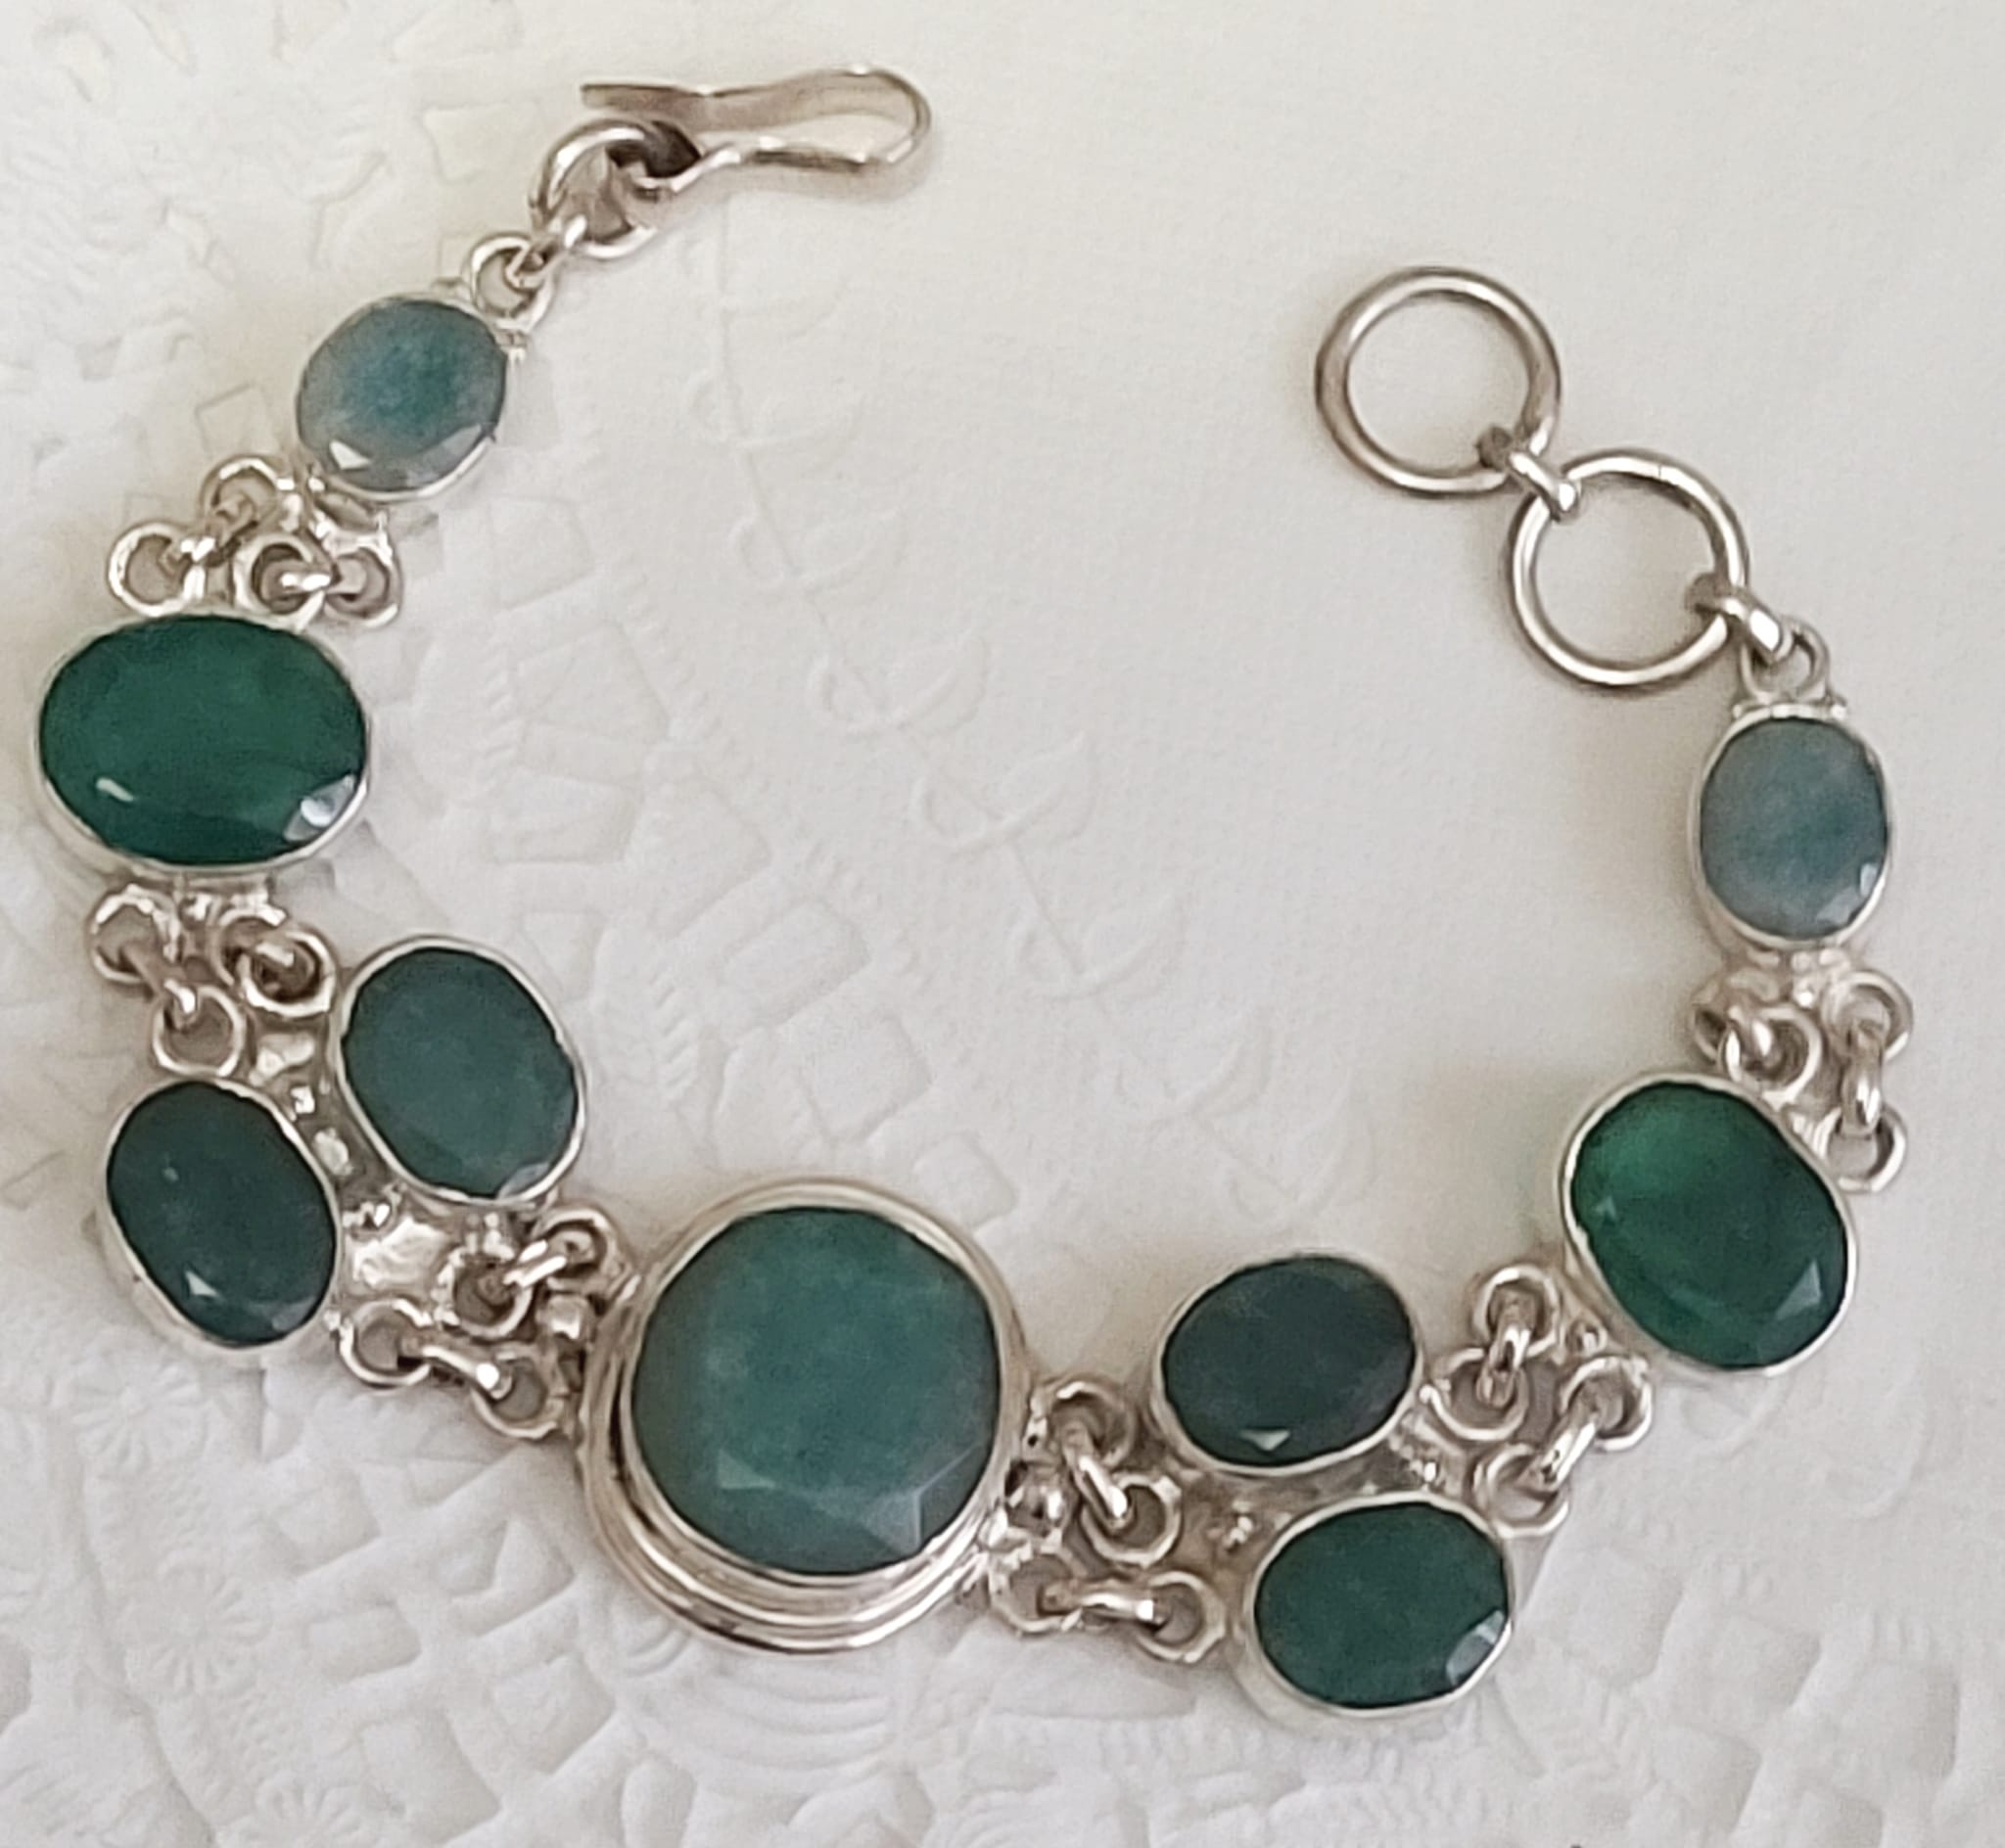 Emeralds 180 Carats Set in 925 Sterling Silver Bracelet